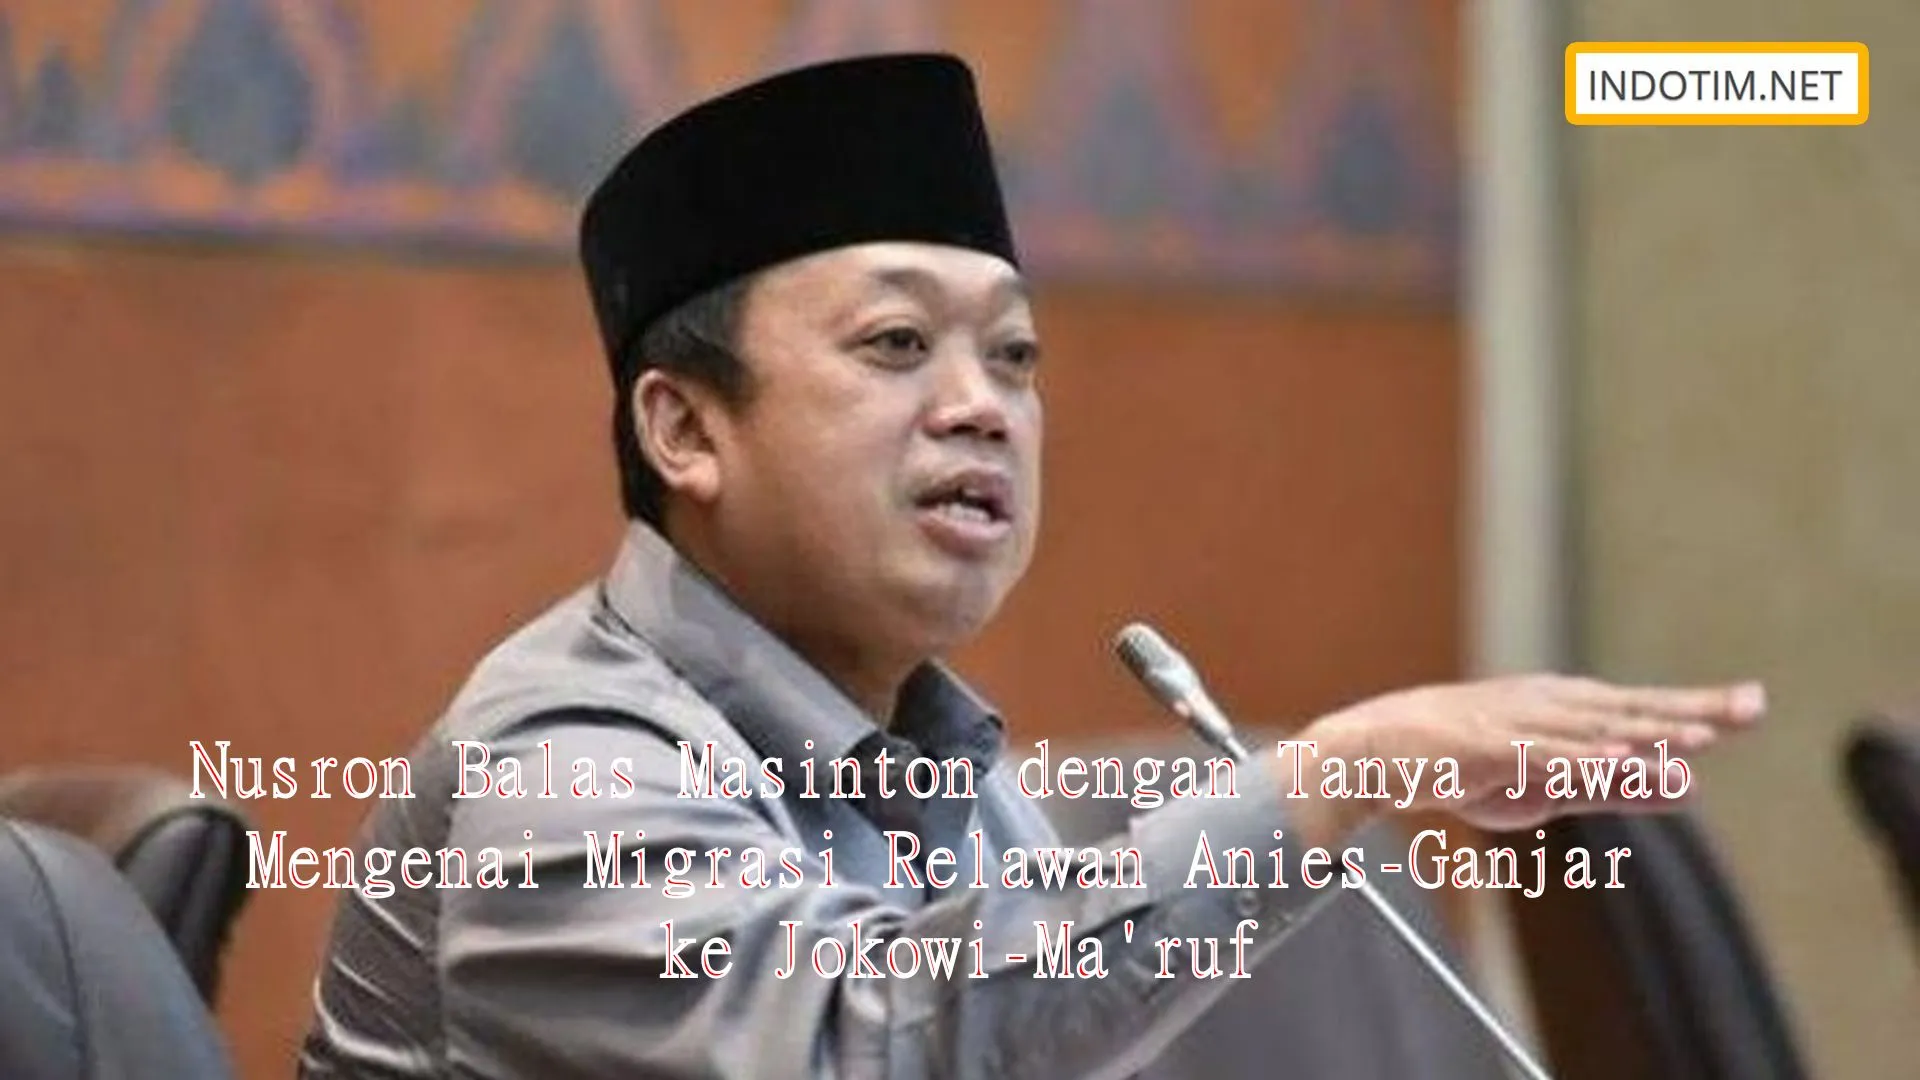 Nusron Balas Masinton dengan Tanya Jawab Mengenai Migrasi Relawan Anies-Ganjar ke Jokowi-Ma'ruf